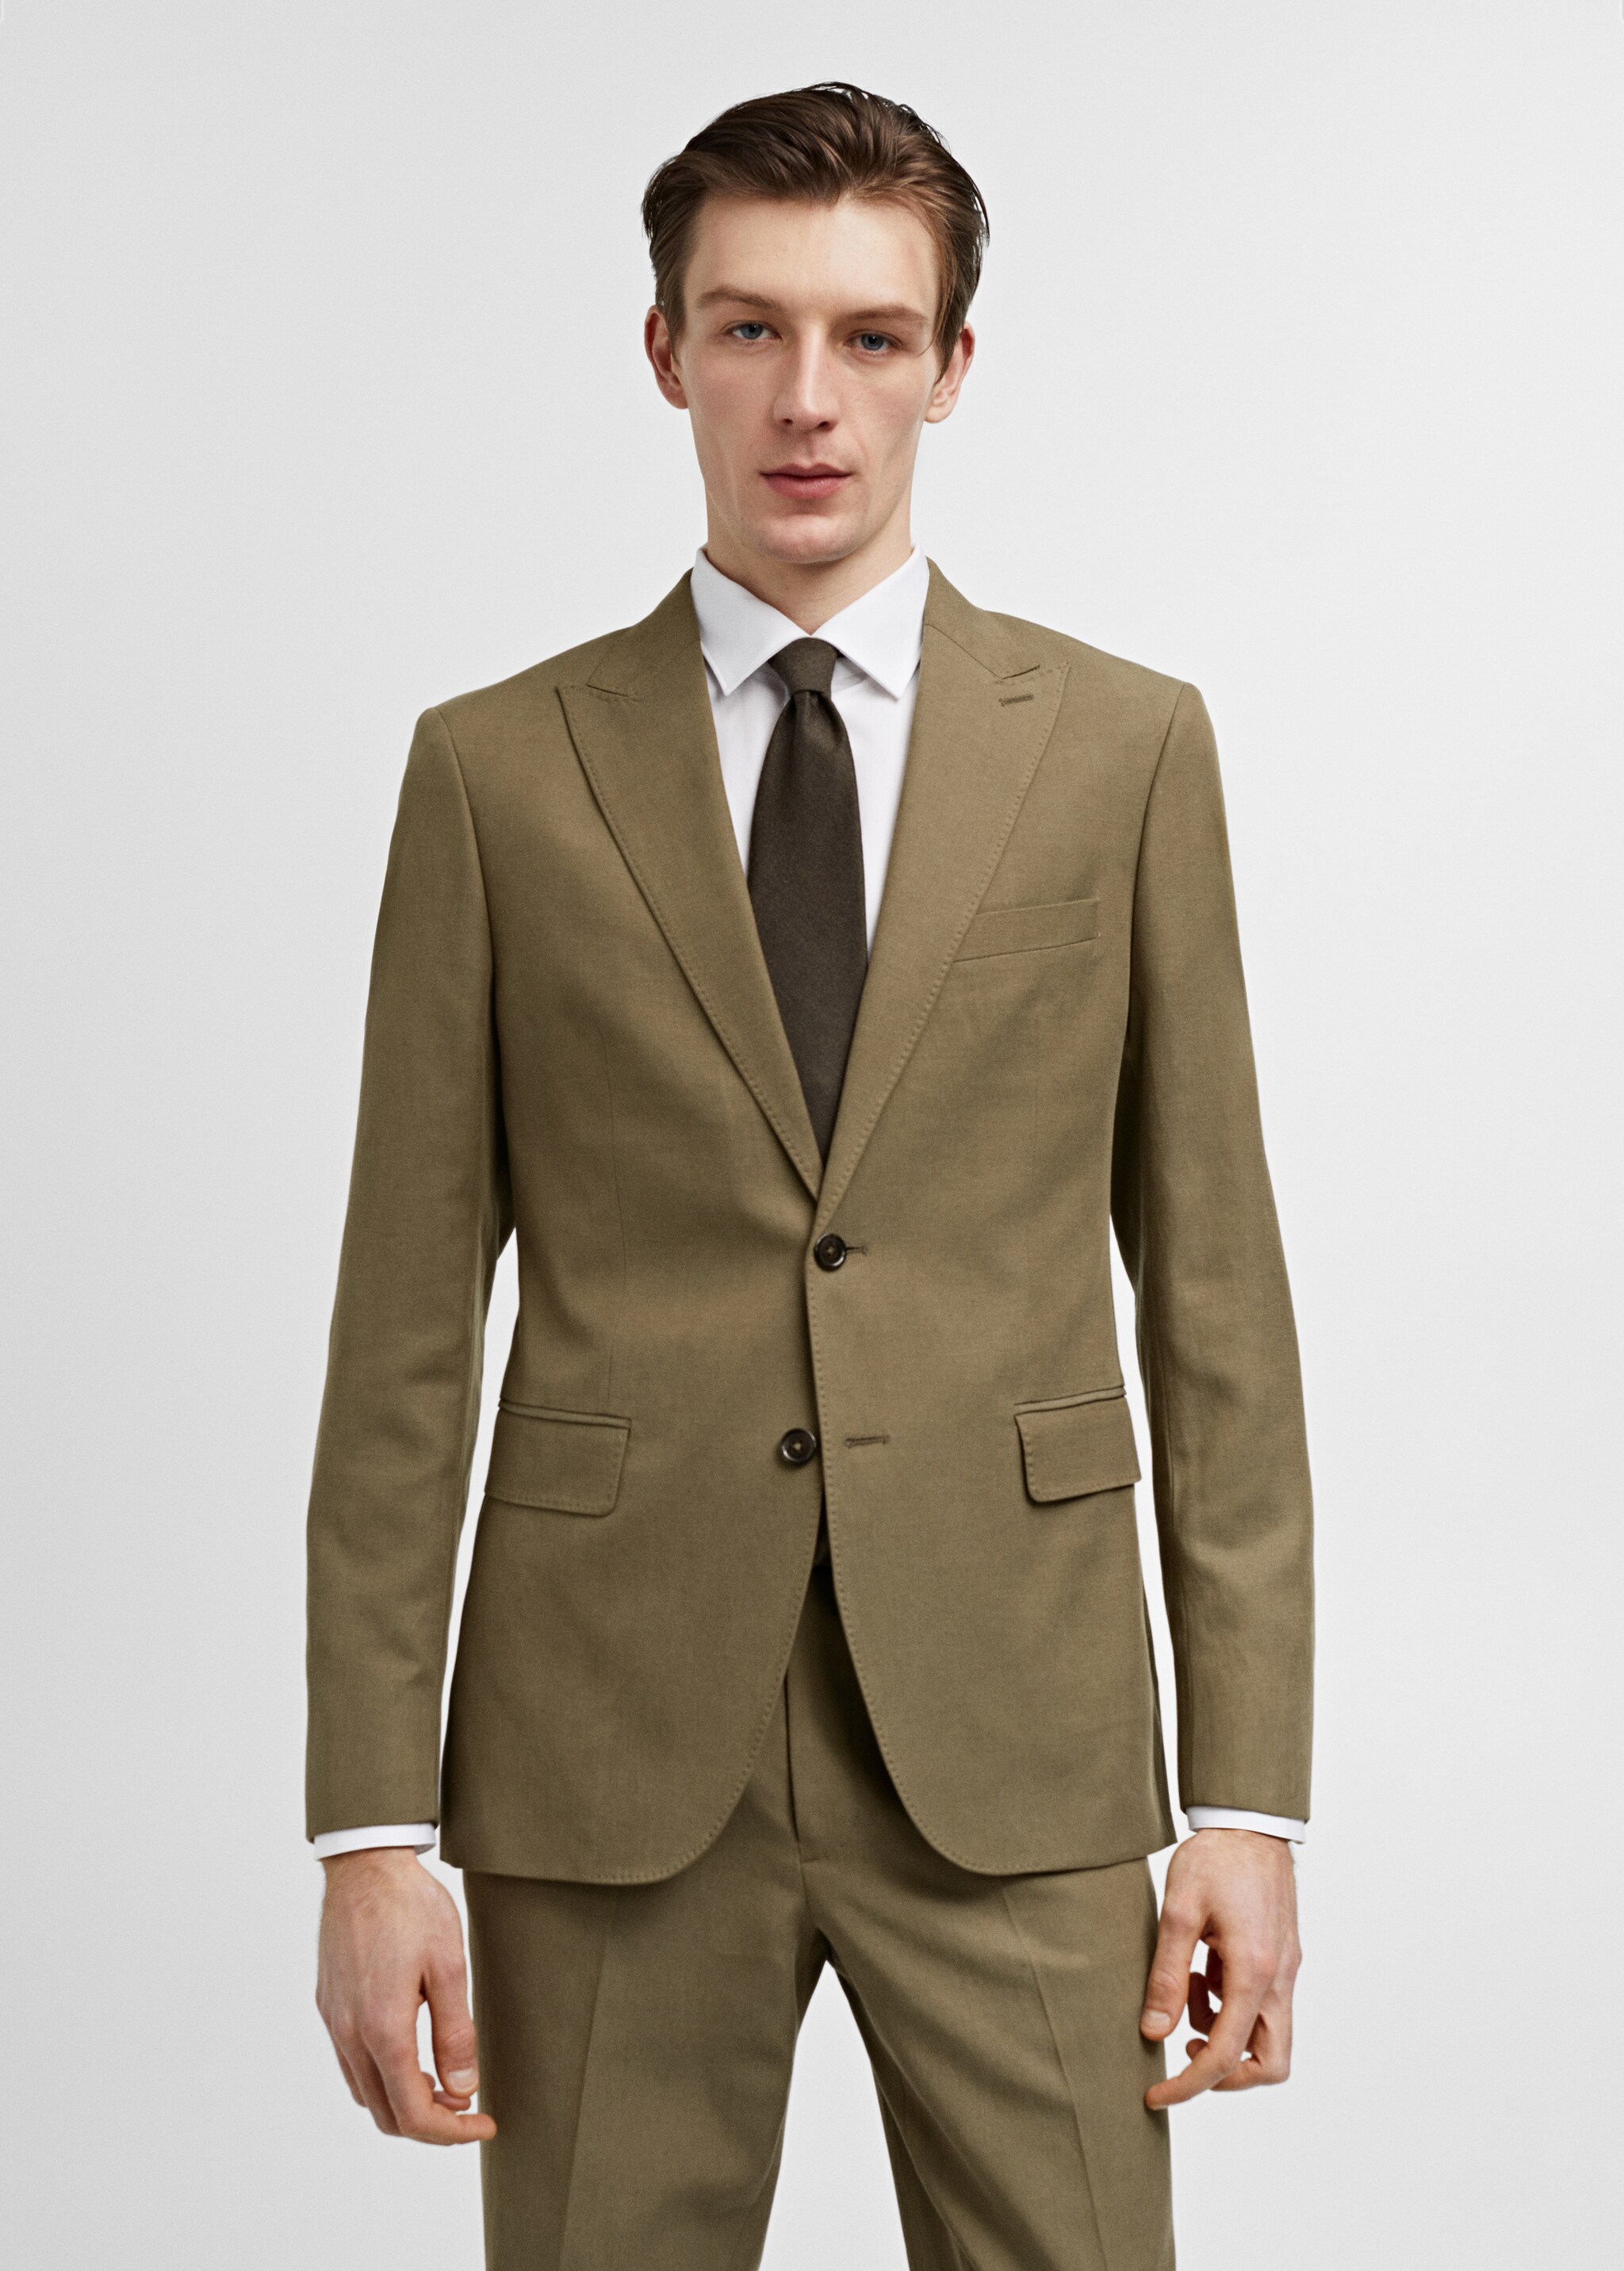 Slim fit linen and cotton suit jacket - Medium plane